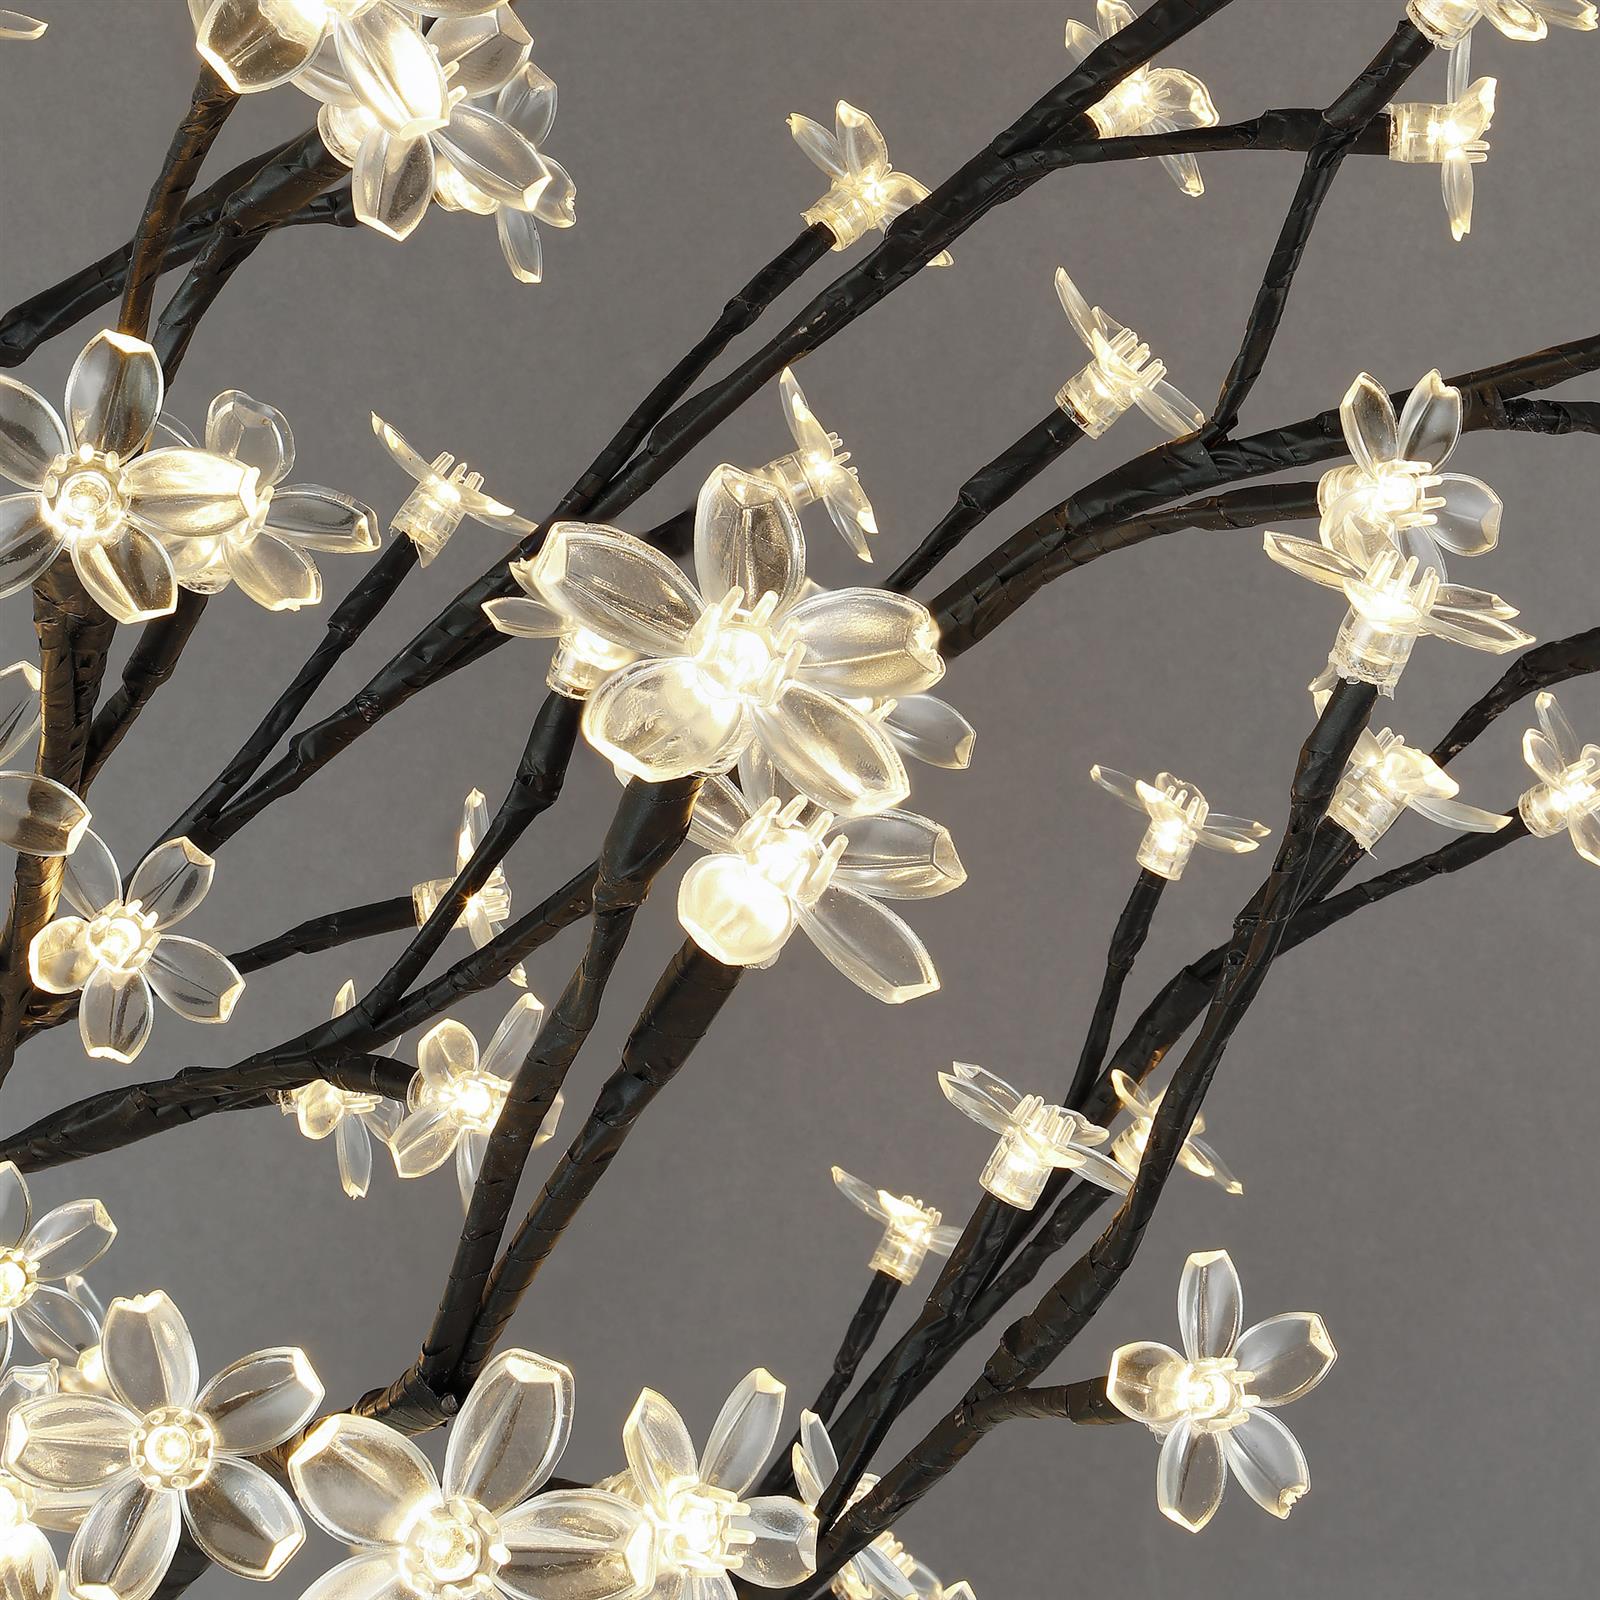 LED Blütenbaum mit 400 LEDs beleuchtet, 180 cm, warm-weiß, Lichterzweig,  Kirschblütenbaum, Lichterbaum, LED-Baum für Innen- und geschützten